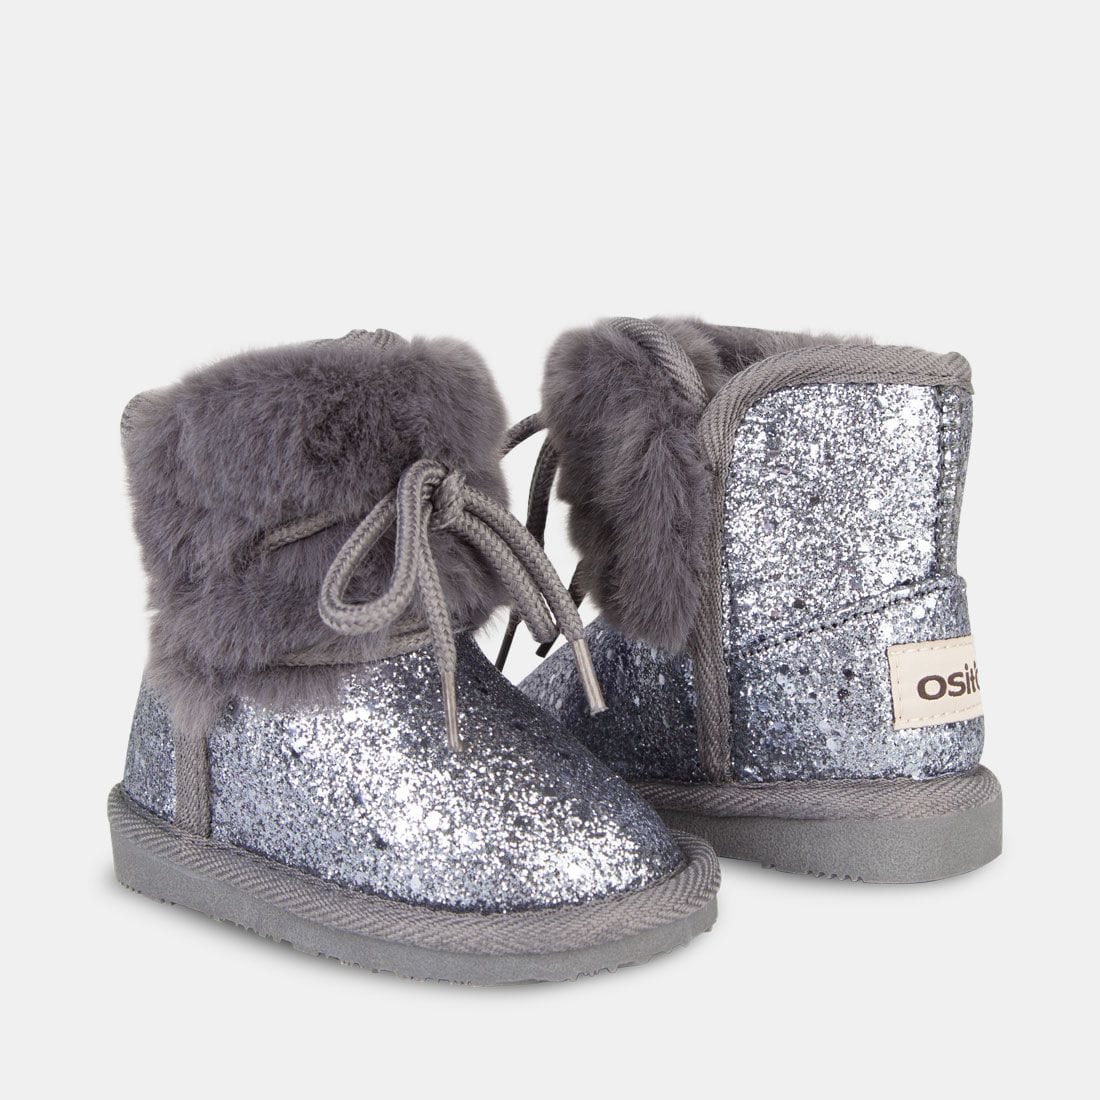 OSITO Shoes Botas Australianas de Bebé Glitter Pelo Plomo